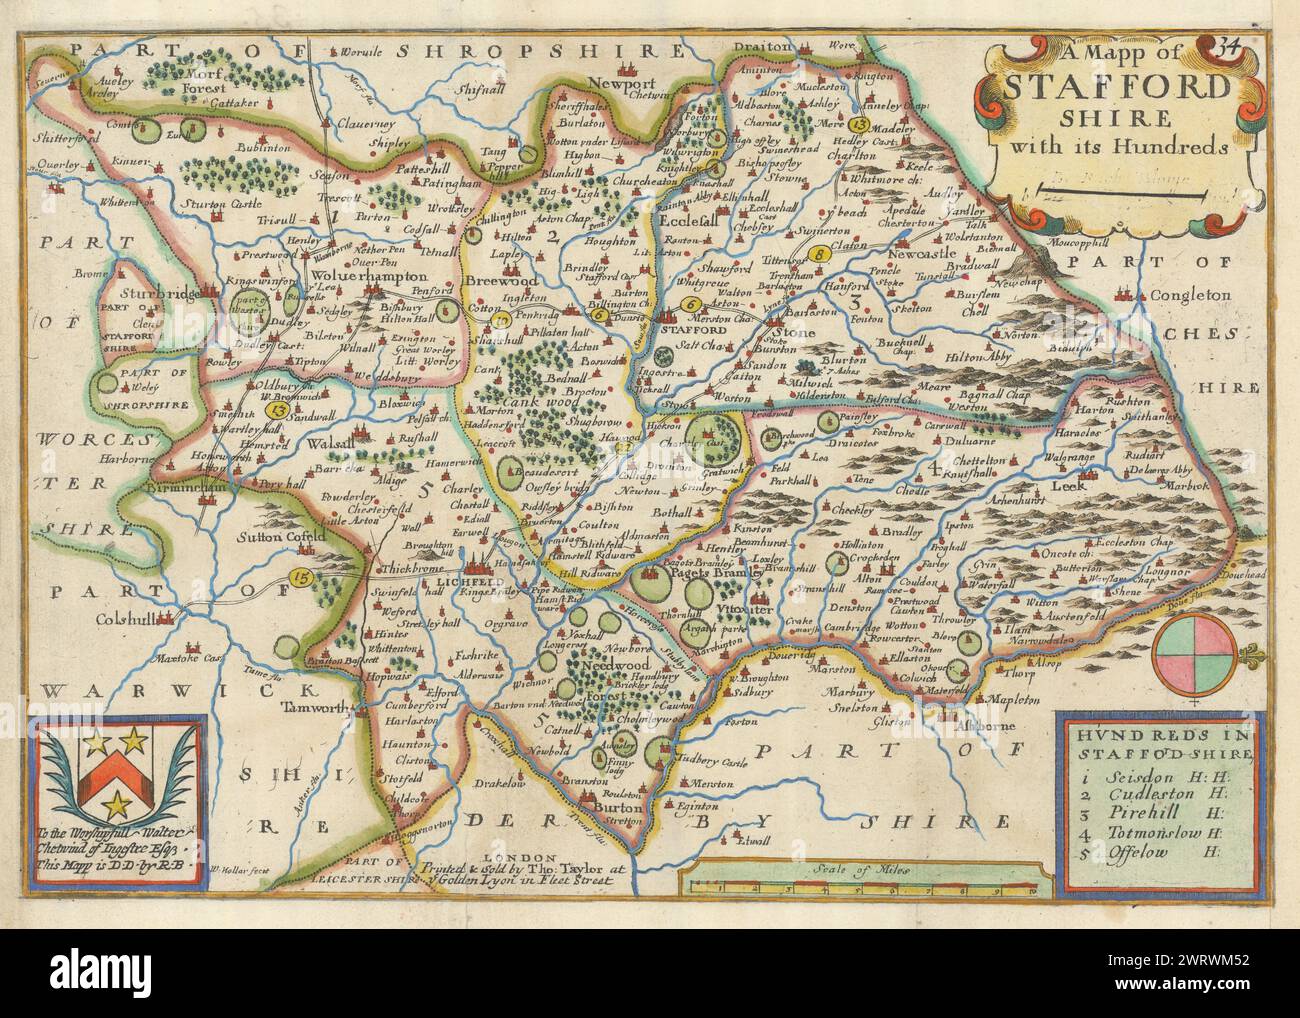 Ein Mapp von Staffordshire mit seinen Hunderten von Richard Blome. Landkarte 1715 Stockfoto